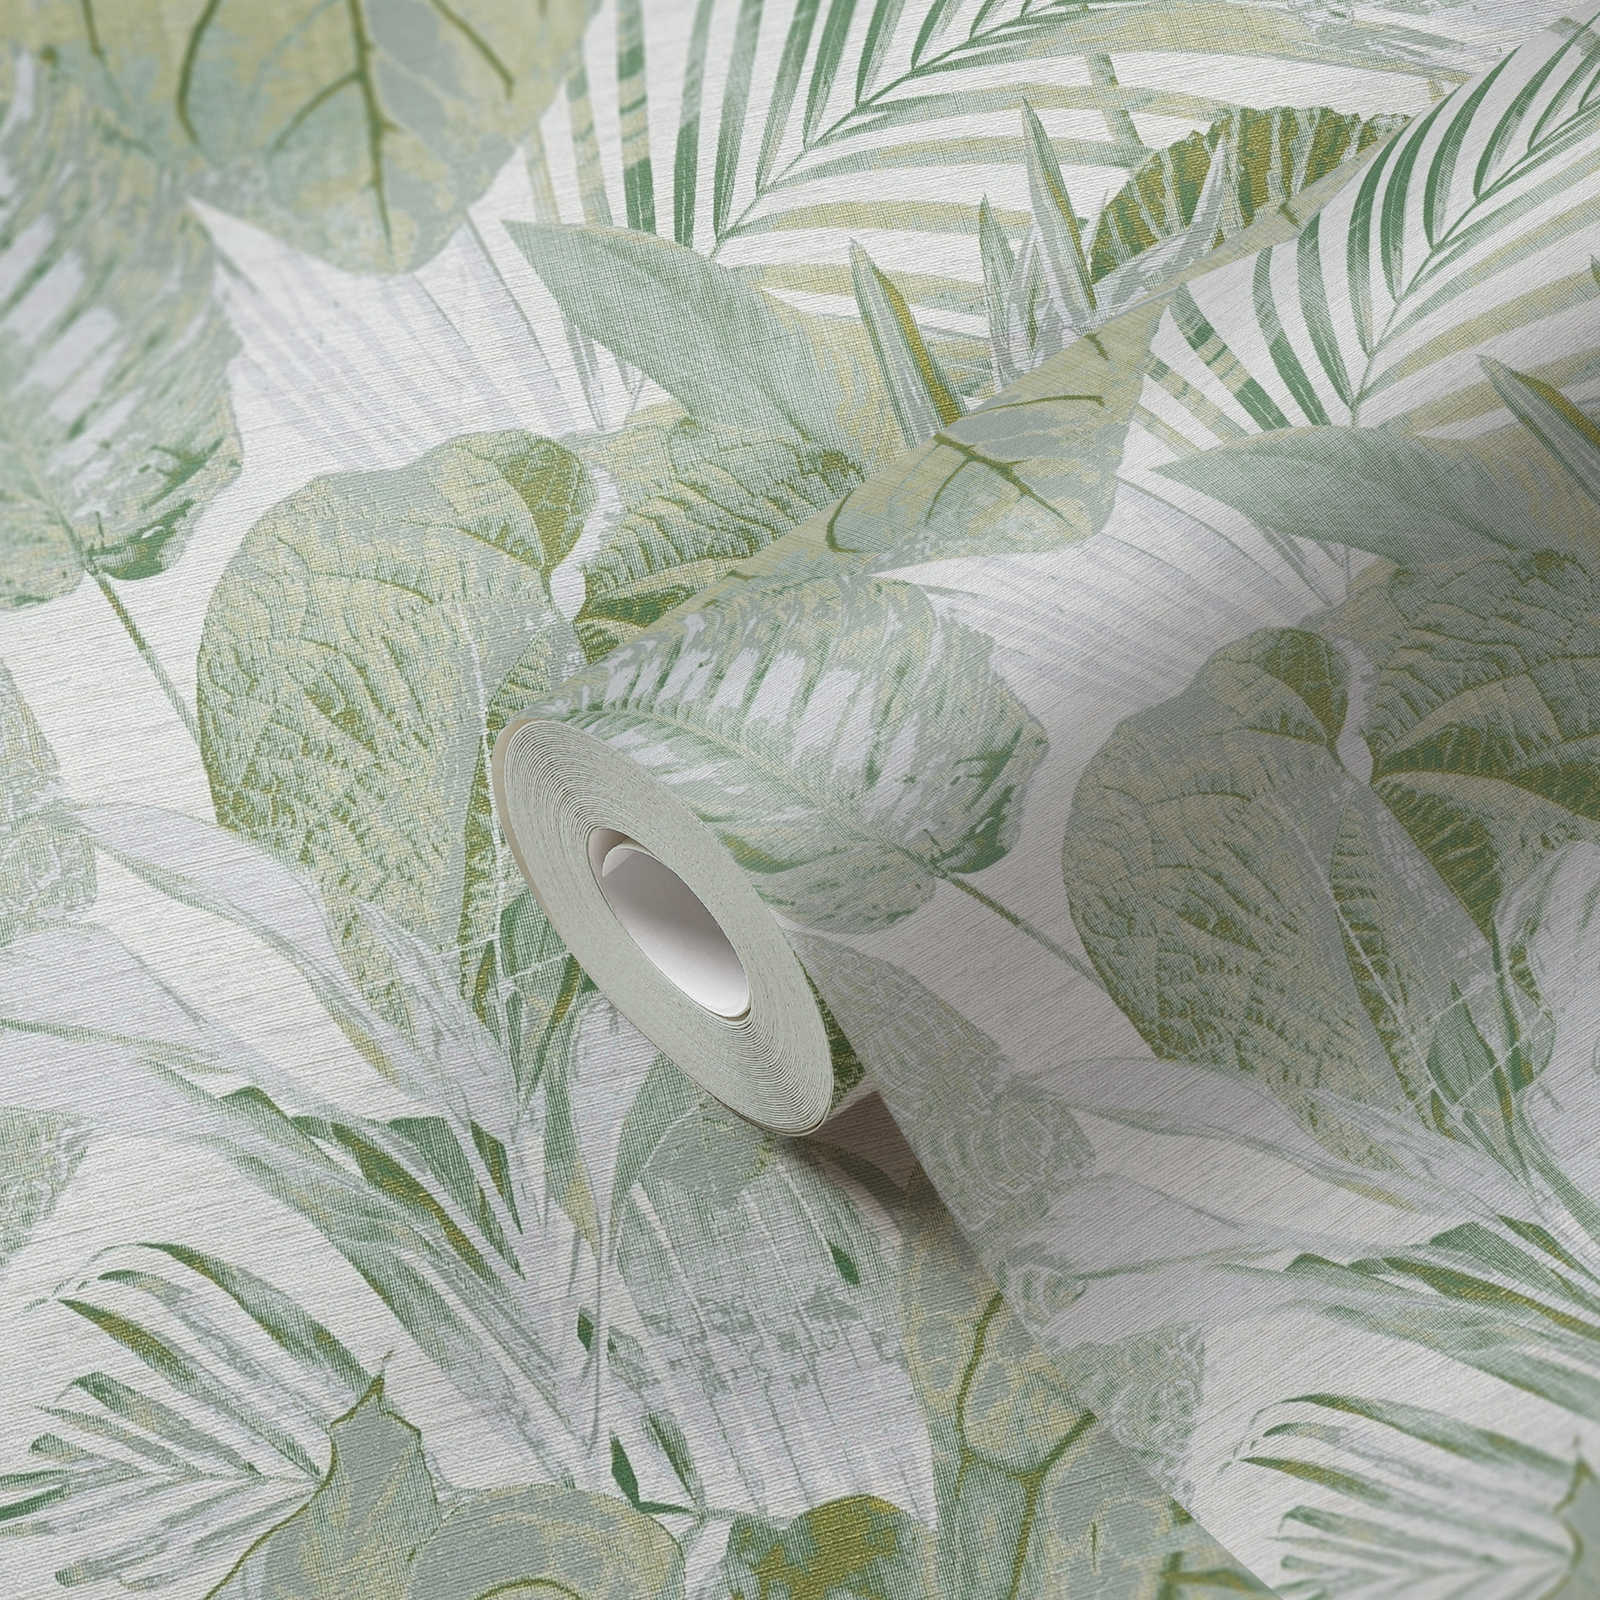             Onderlaag behang met bladeren en jungle patroon licht glanzend - groen, wit, grijs
        